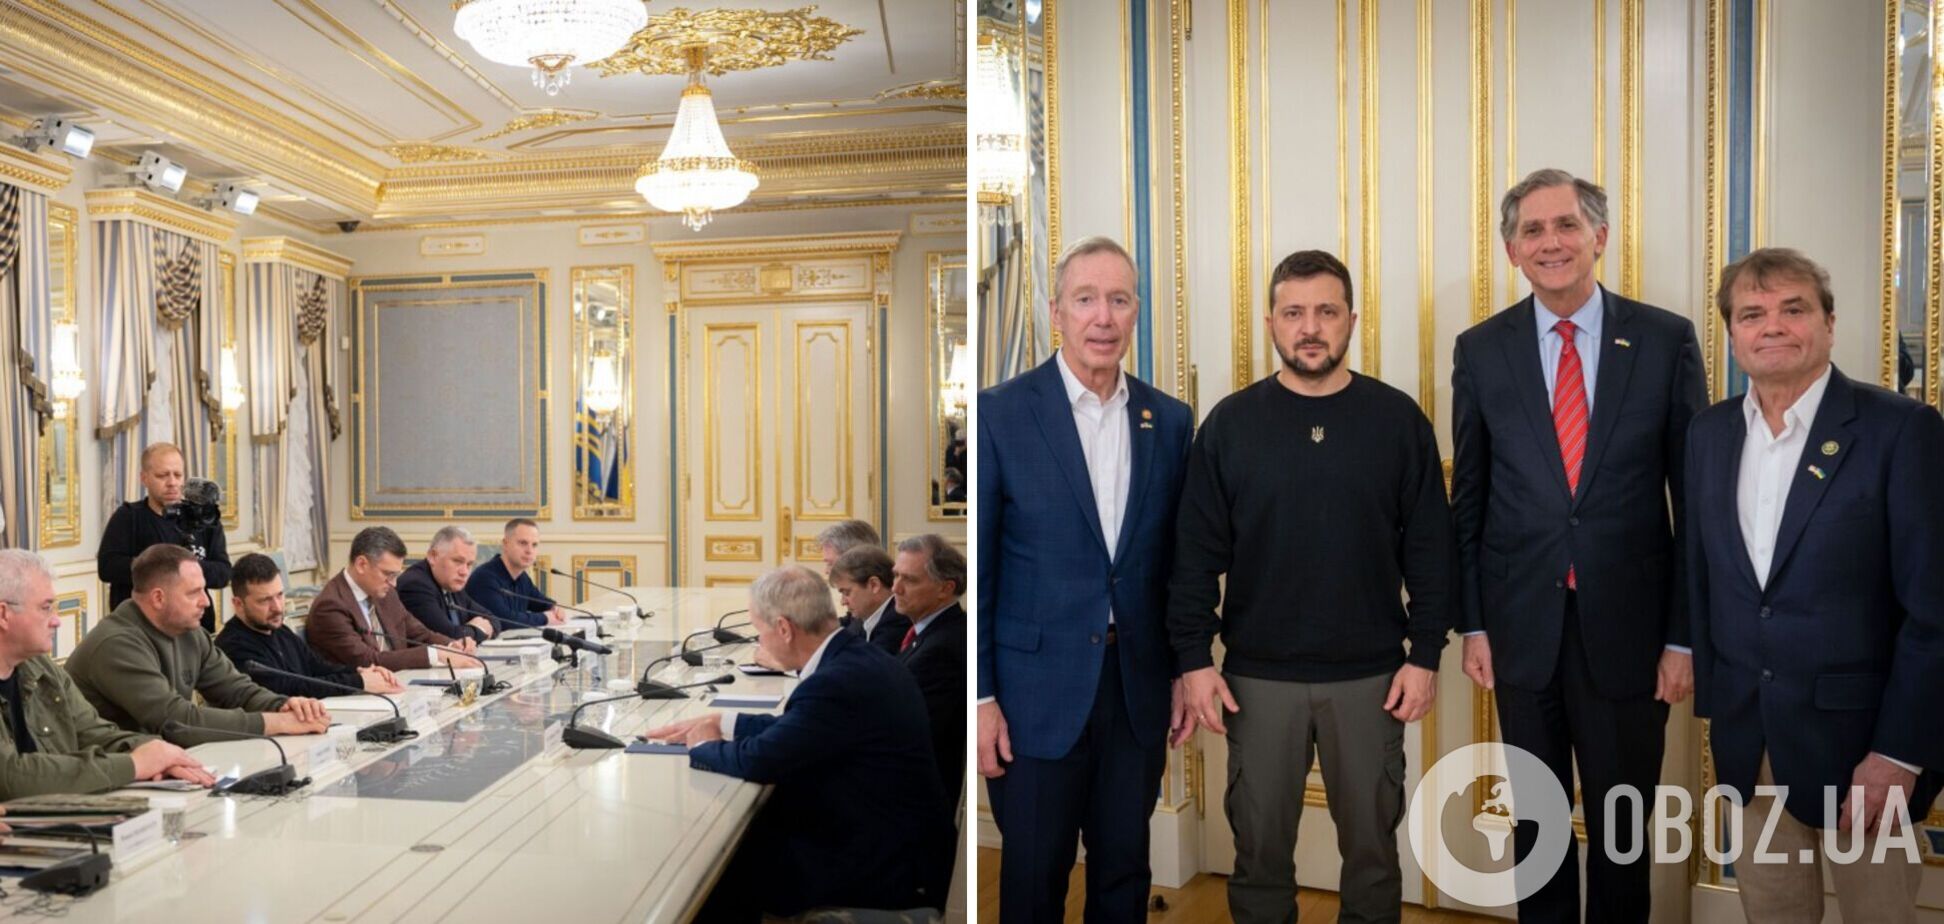 'Украина всегда ценила поддержку обеих партий': Зеленский встретился с двухпартийной делегацией американских конгрессменов. Фото и видео